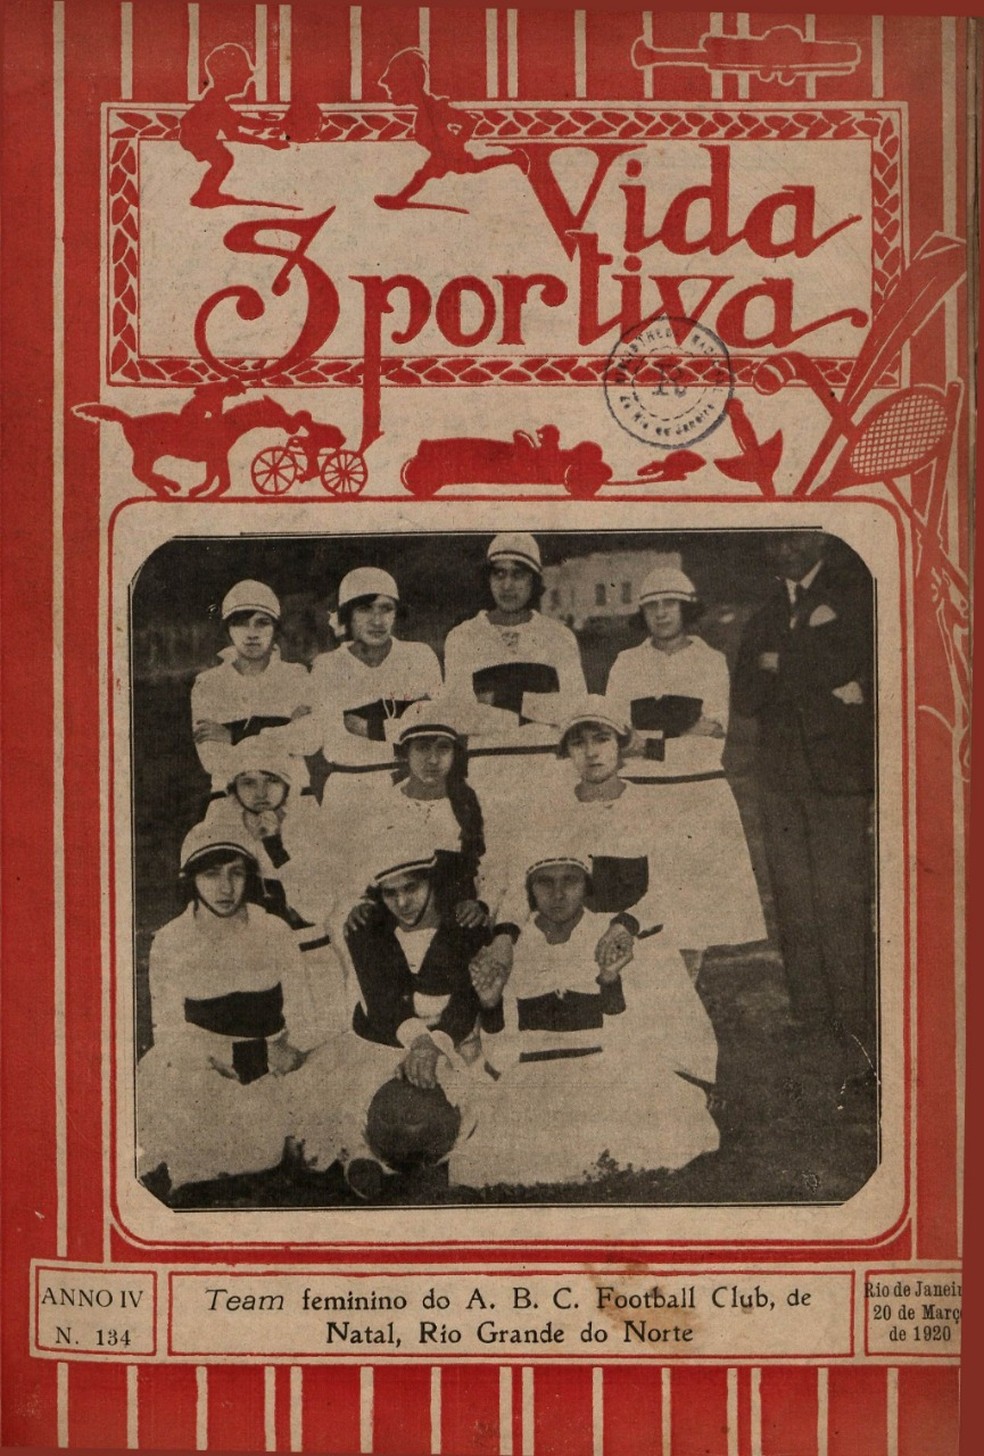 Revista Vida Sportiva de março de 1920 trouxe na capa uma foto da equipe feminina do ABC Football Club — Foto: Acervo Pessoal